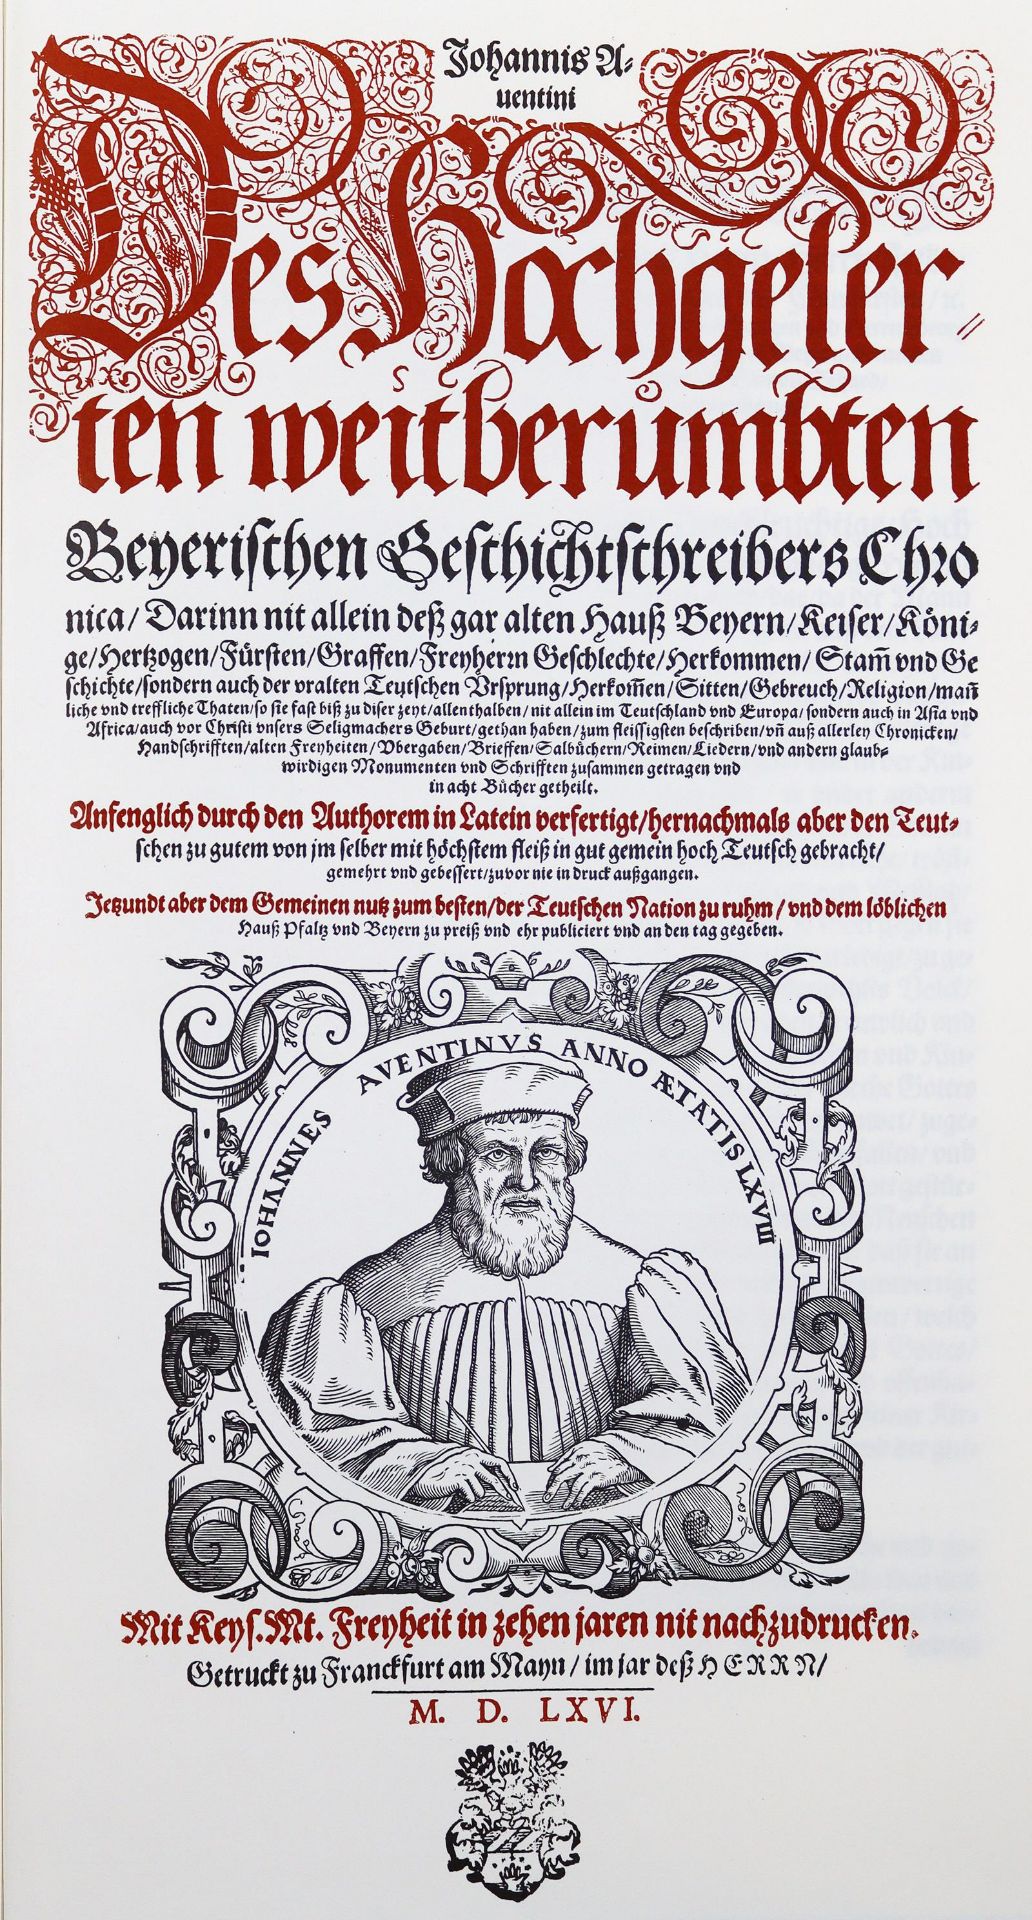 Aventinus,J. (d.i. J.Thurmair).